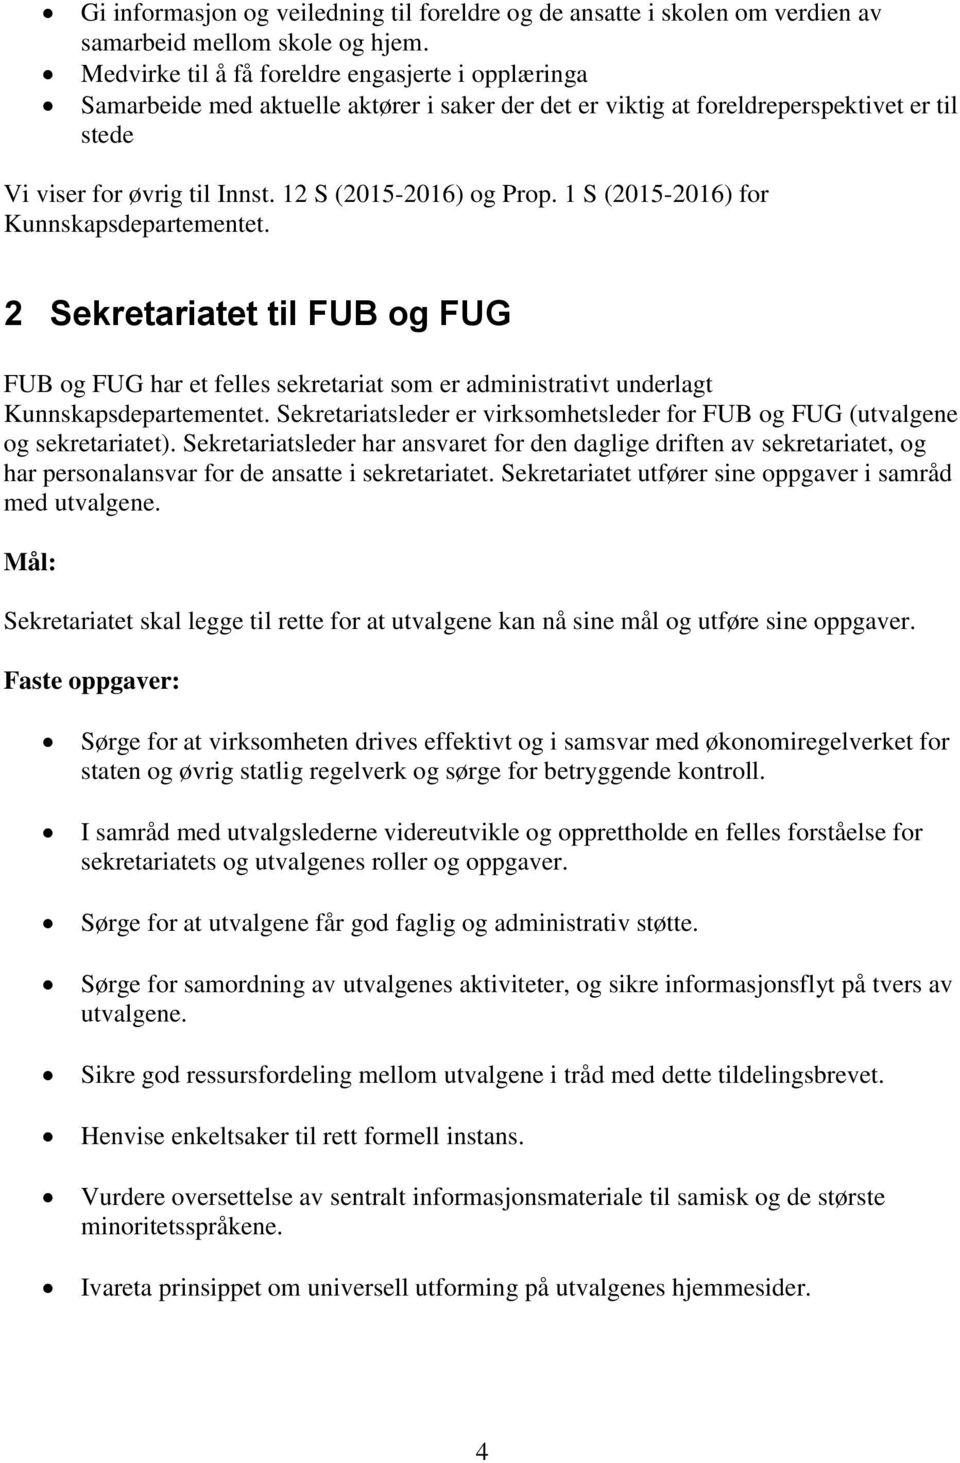 12 S (2015-2016) og Prop. 1 S (2015-2016) for Kunnskapsdepartementet. 2 Sekretariatet til FUB og FUG FUB og FUG har et felles sekretariat som er administrativt underlagt Kunnskapsdepartementet.